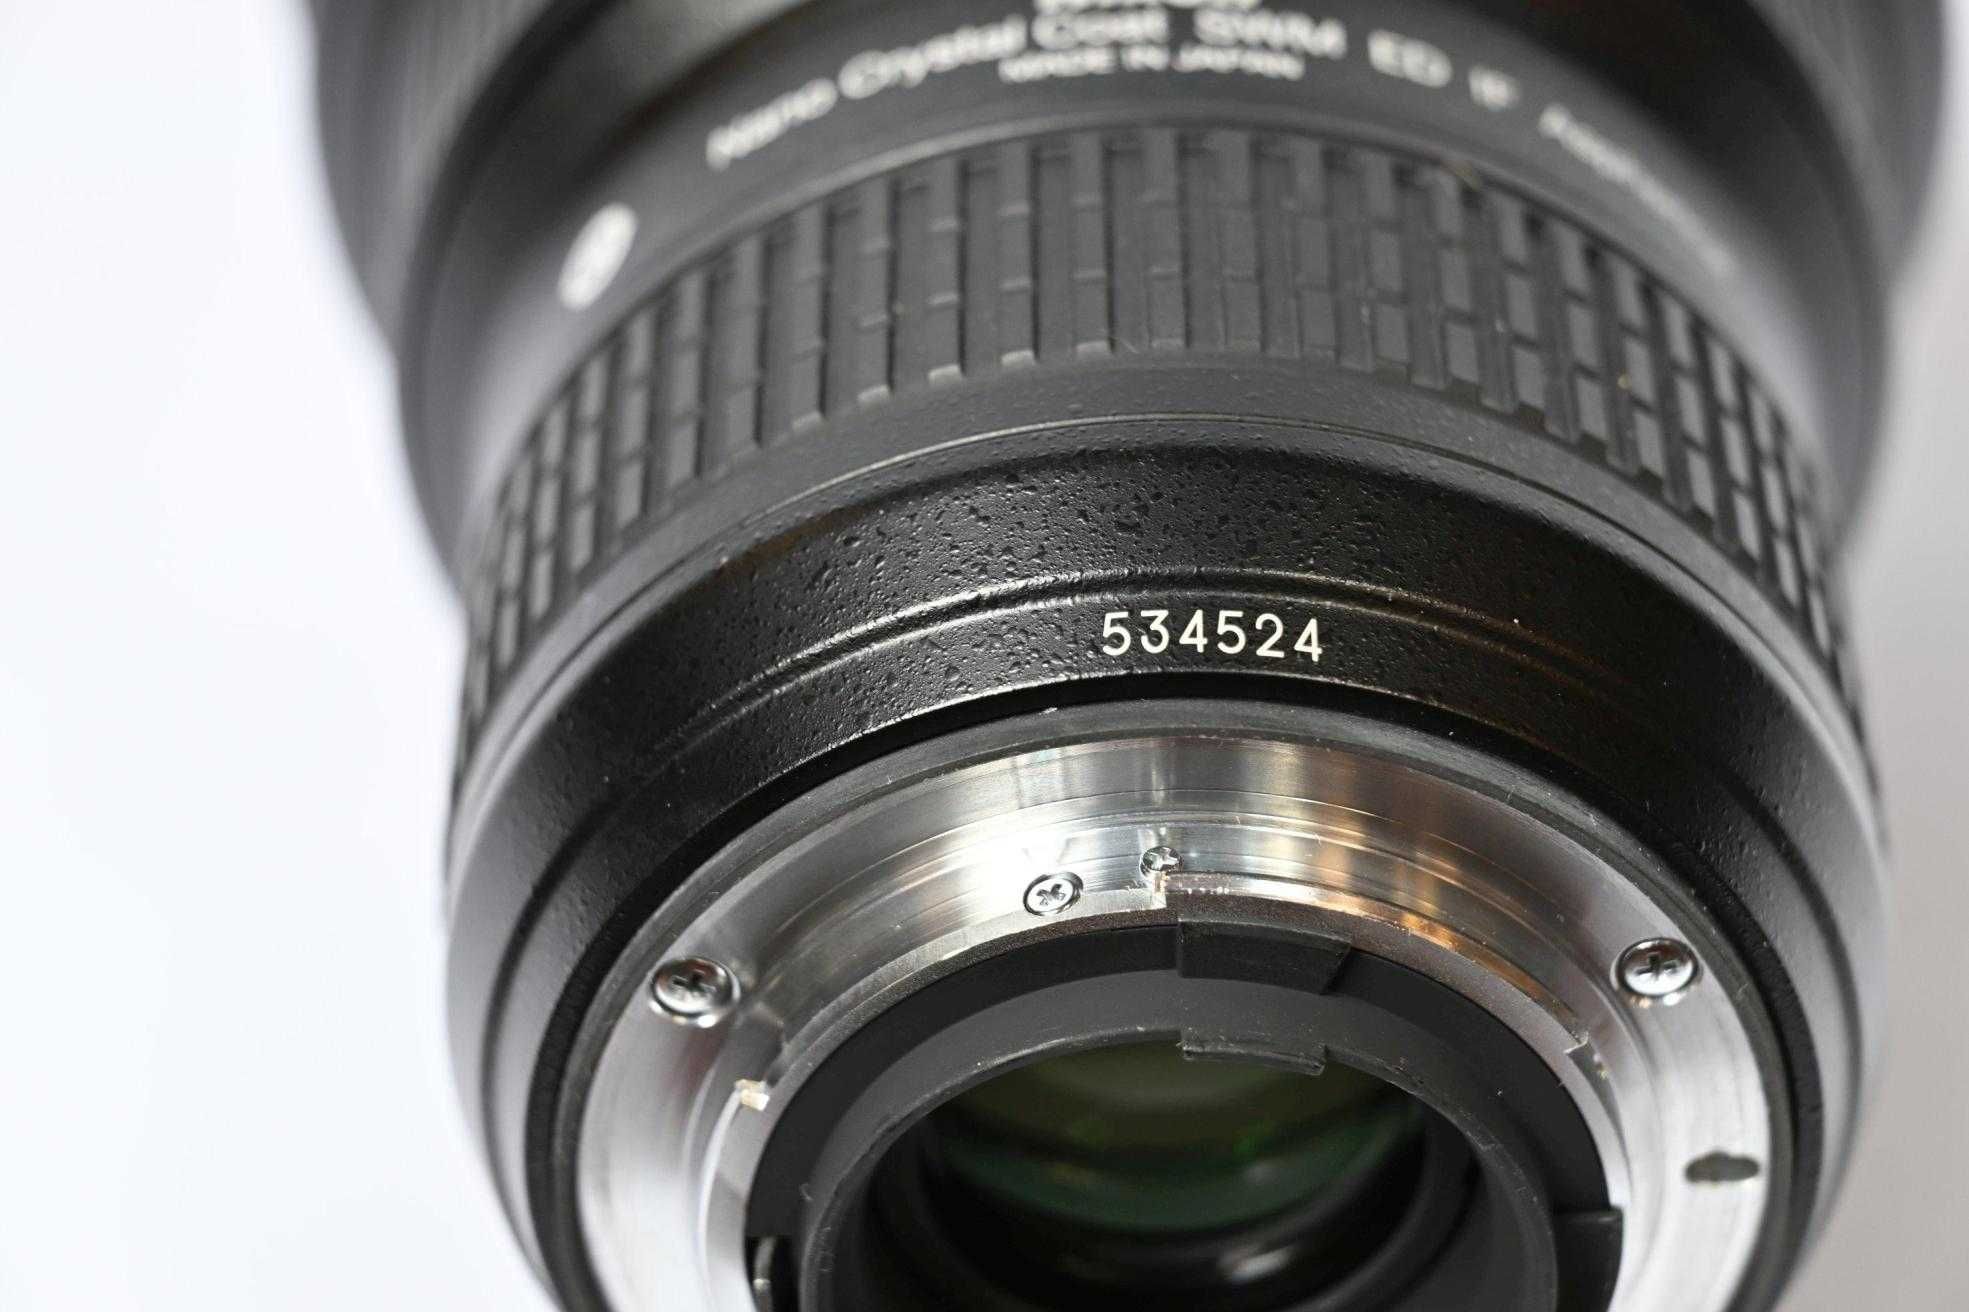 Obiektyw Nikon Nikkor 14-24 mm f2.8G ED AF-S (wystawiam fakturę).